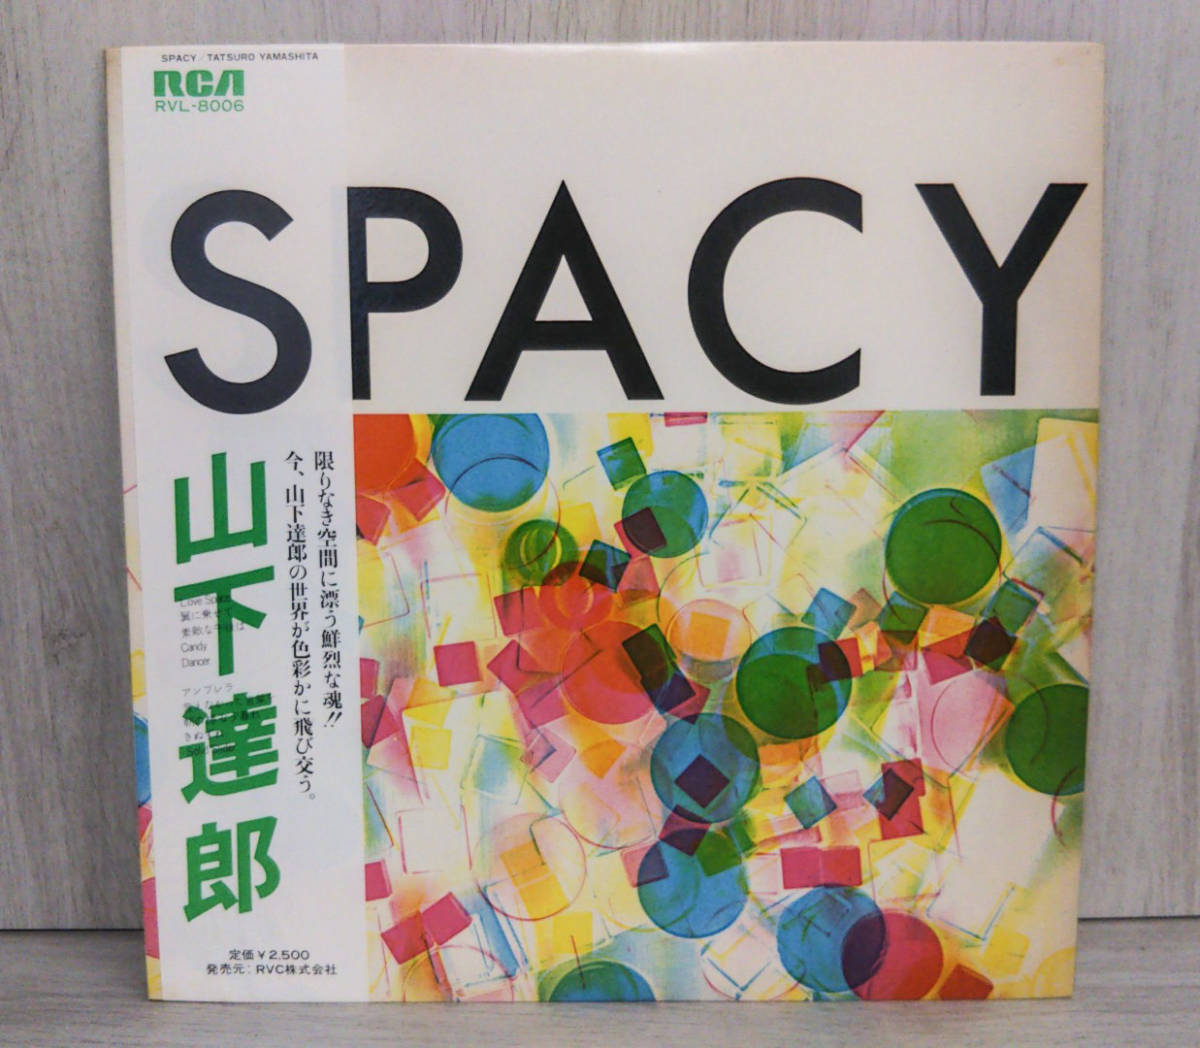 ヤフオク! - 【LP盤】SPACY 山下達郎 LPレコード【帯あり】【破...